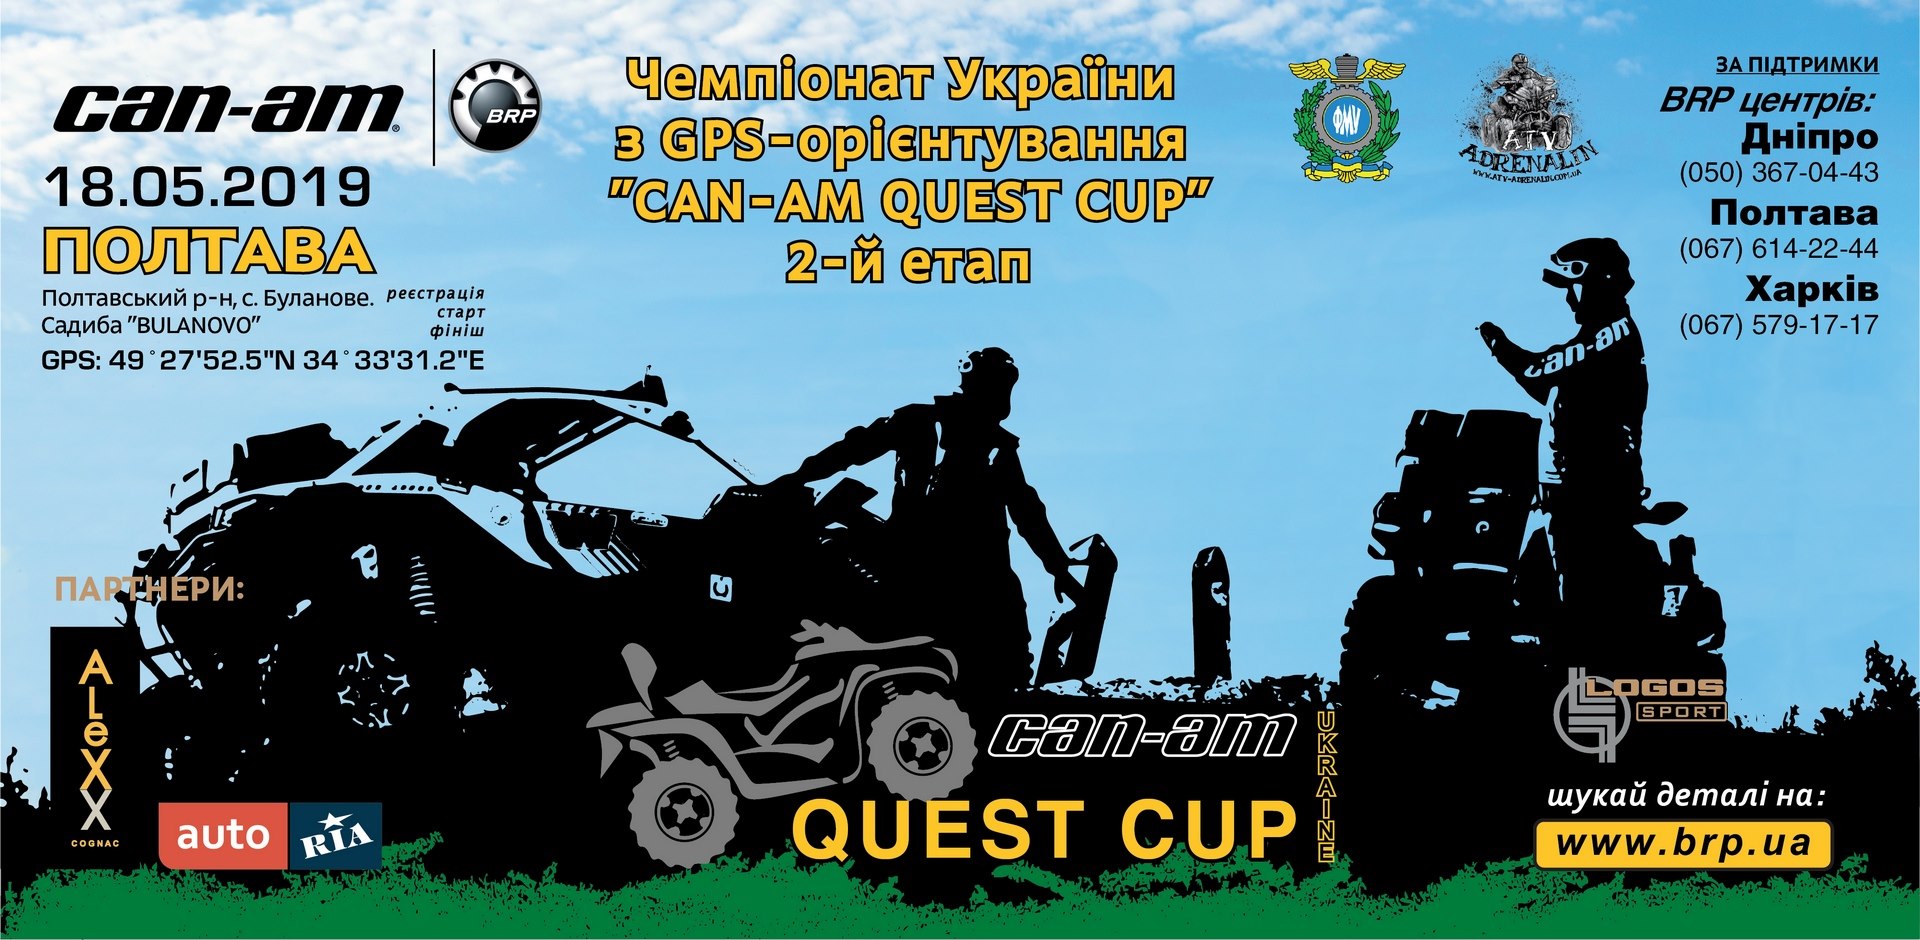 2019.05.18 – 2-й  етап ЧУ 2019 з GPS-орієнтування «CAN-AM QUEST CUP»!